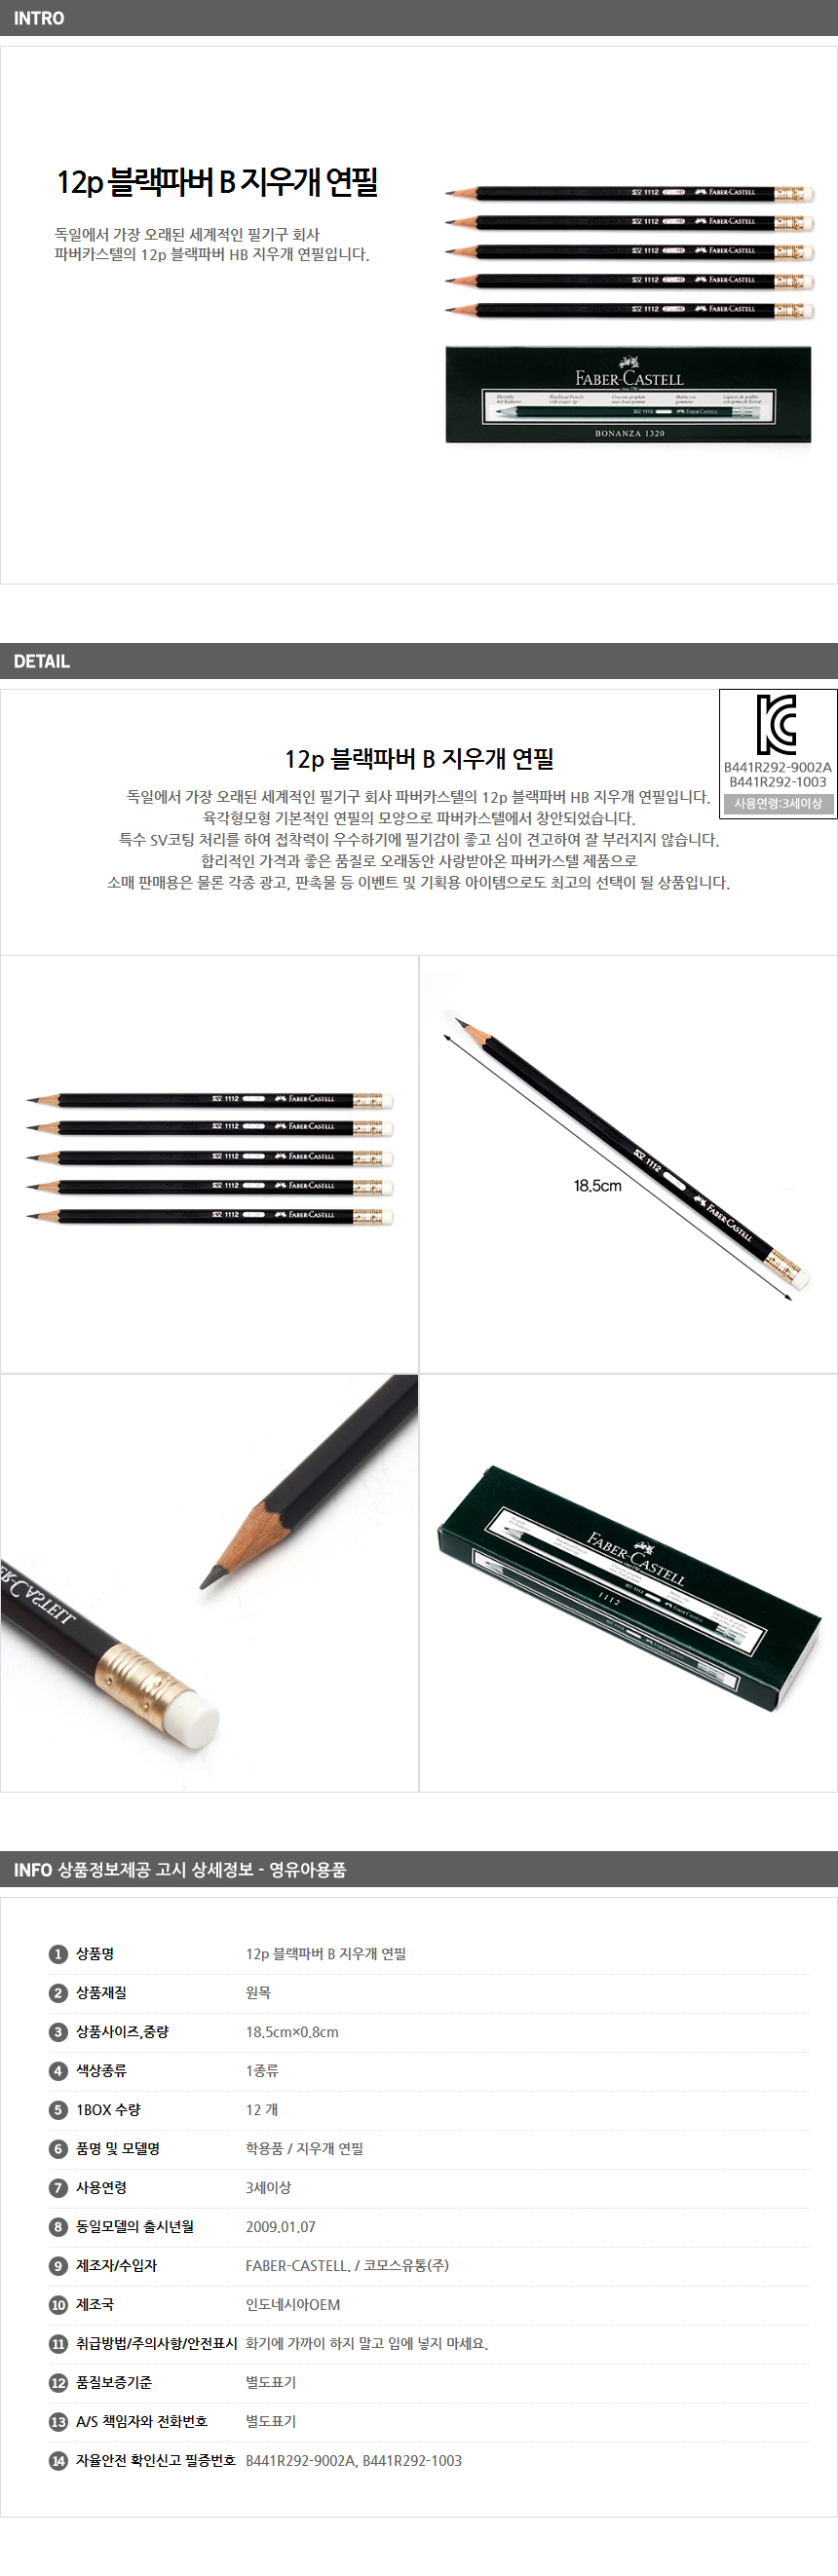 파버카스텔 블랙파버 연필 B 12p/ 학교 신학기 학용품